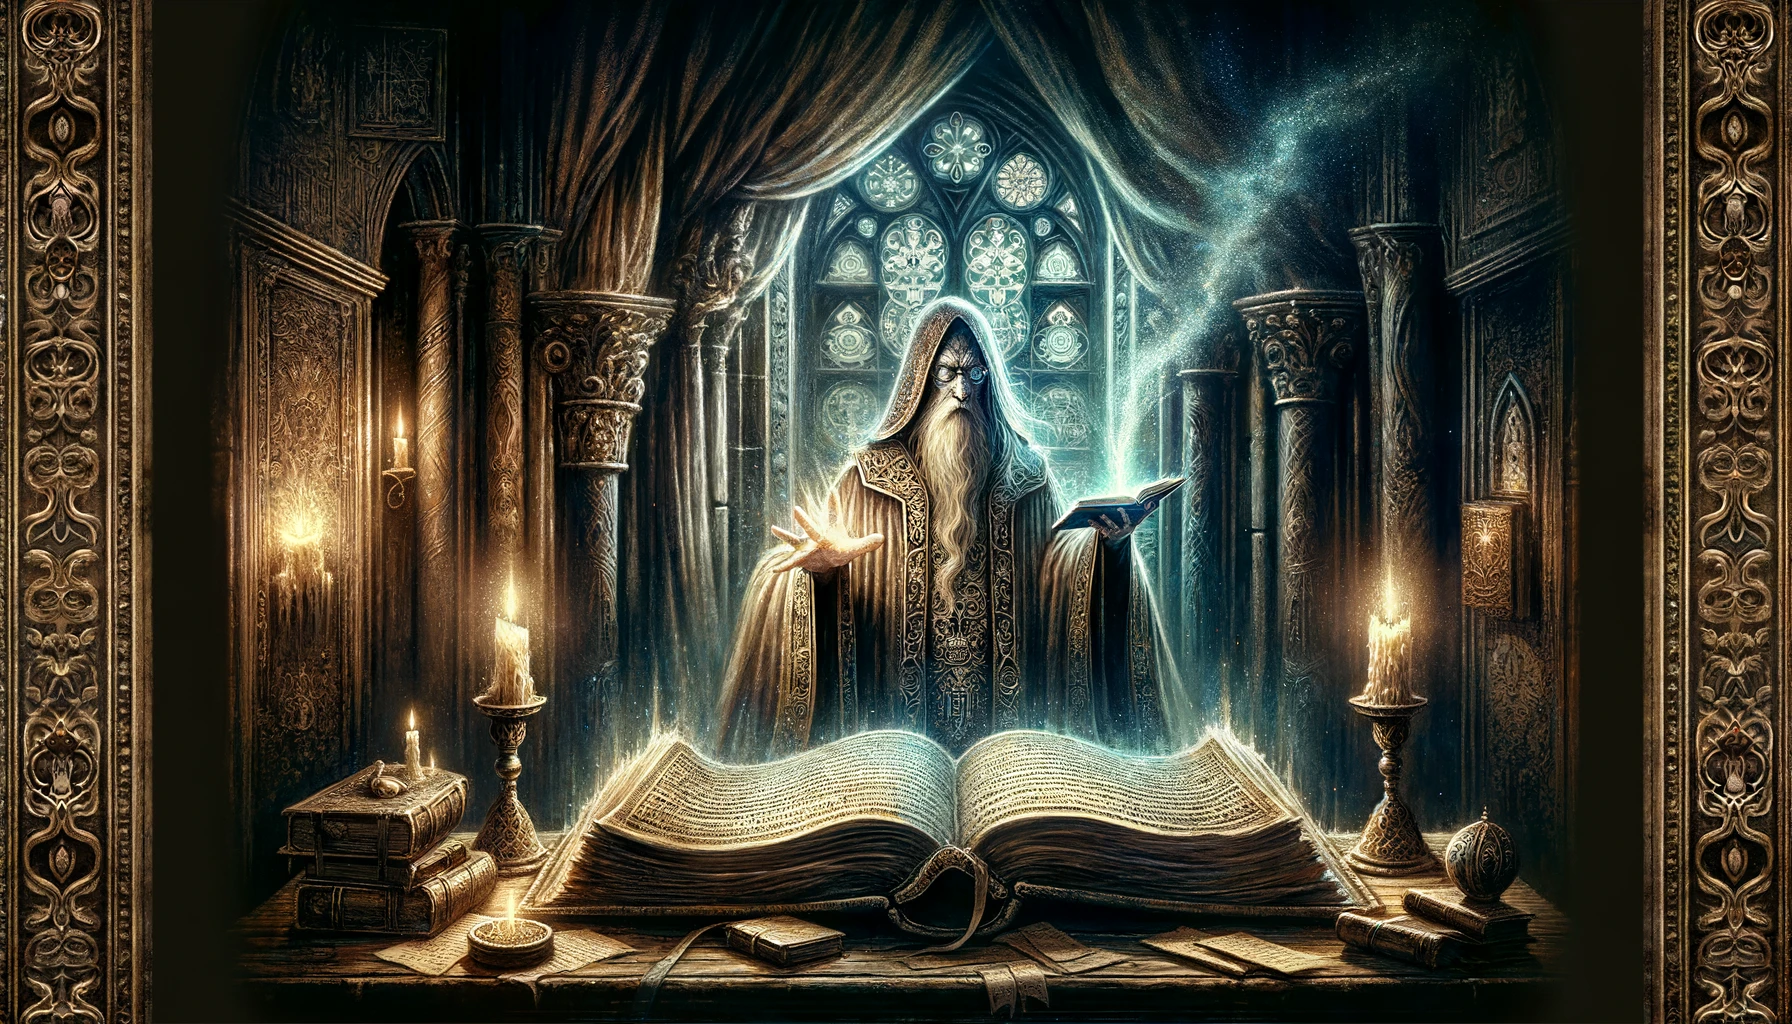 l'illustrazione di un mago in stile gotico fiabesco che consulta un vecchio libro antico.